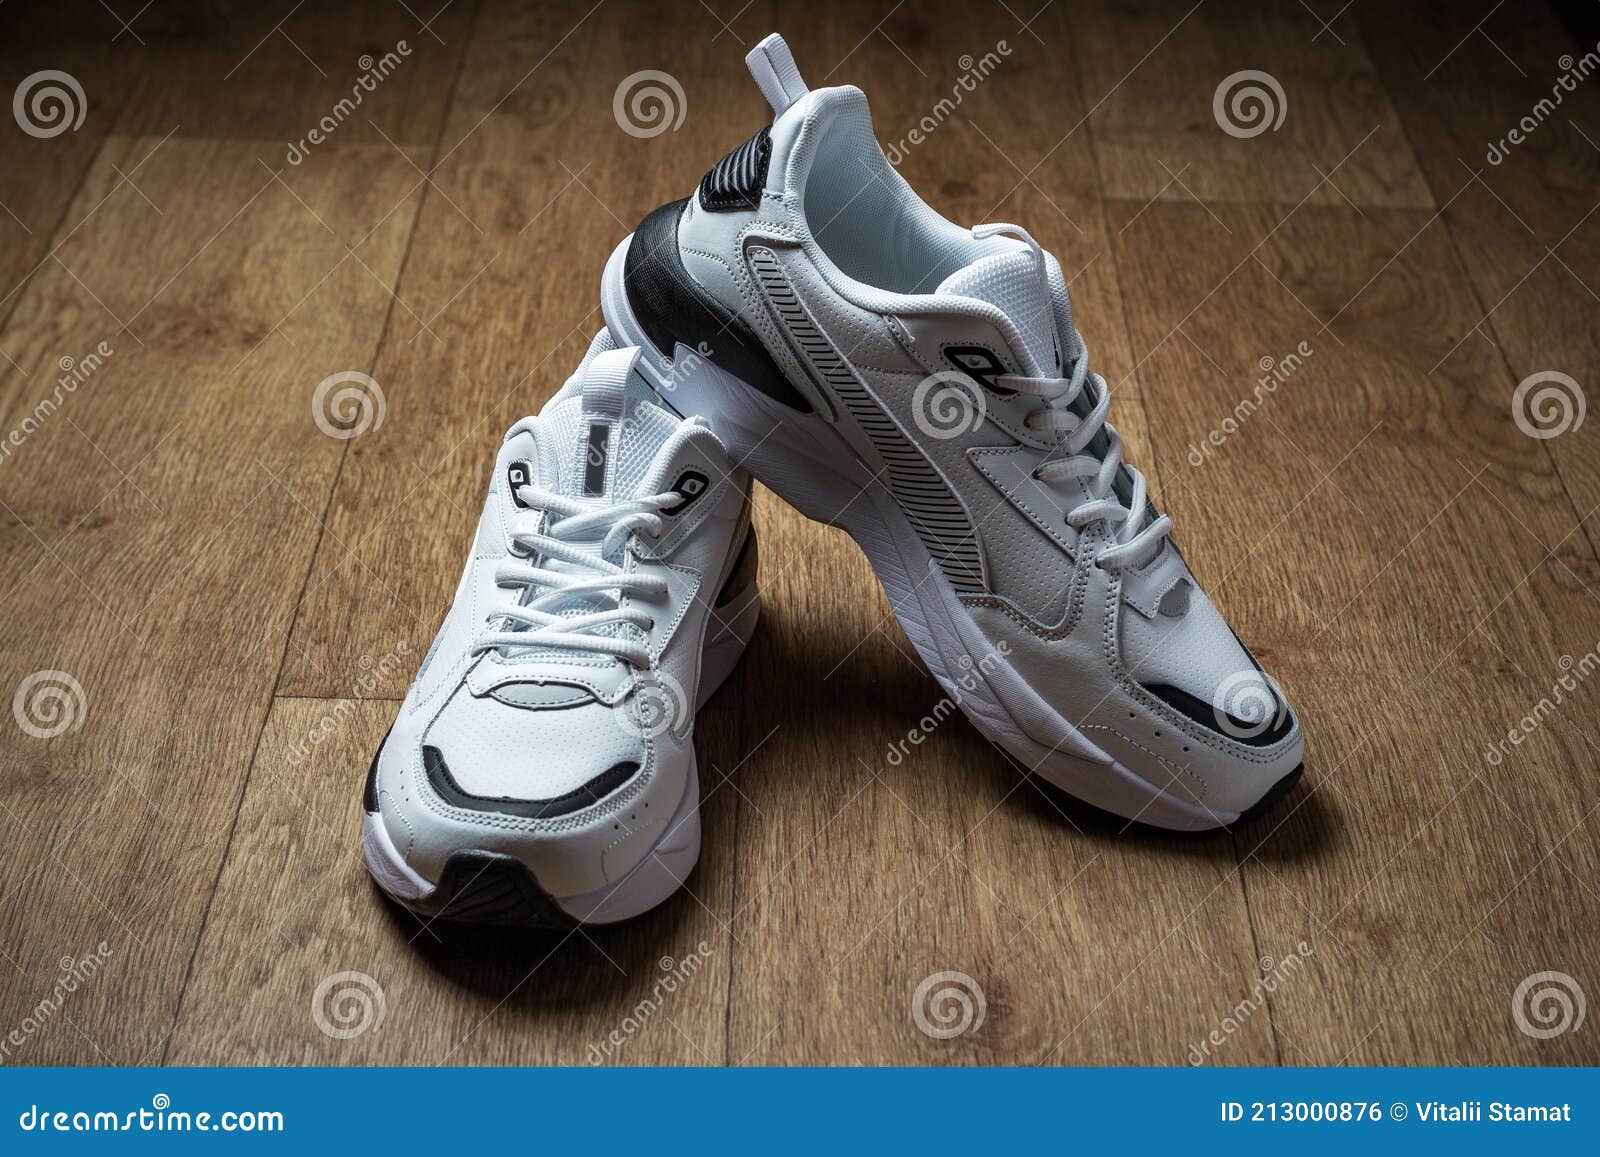 λευκά αθλητικά παπούτσια με μαύρες ρίγες σε καφέ φόντο Στοκ Εικόνες -  εικόνα από lifestyle: 213000876